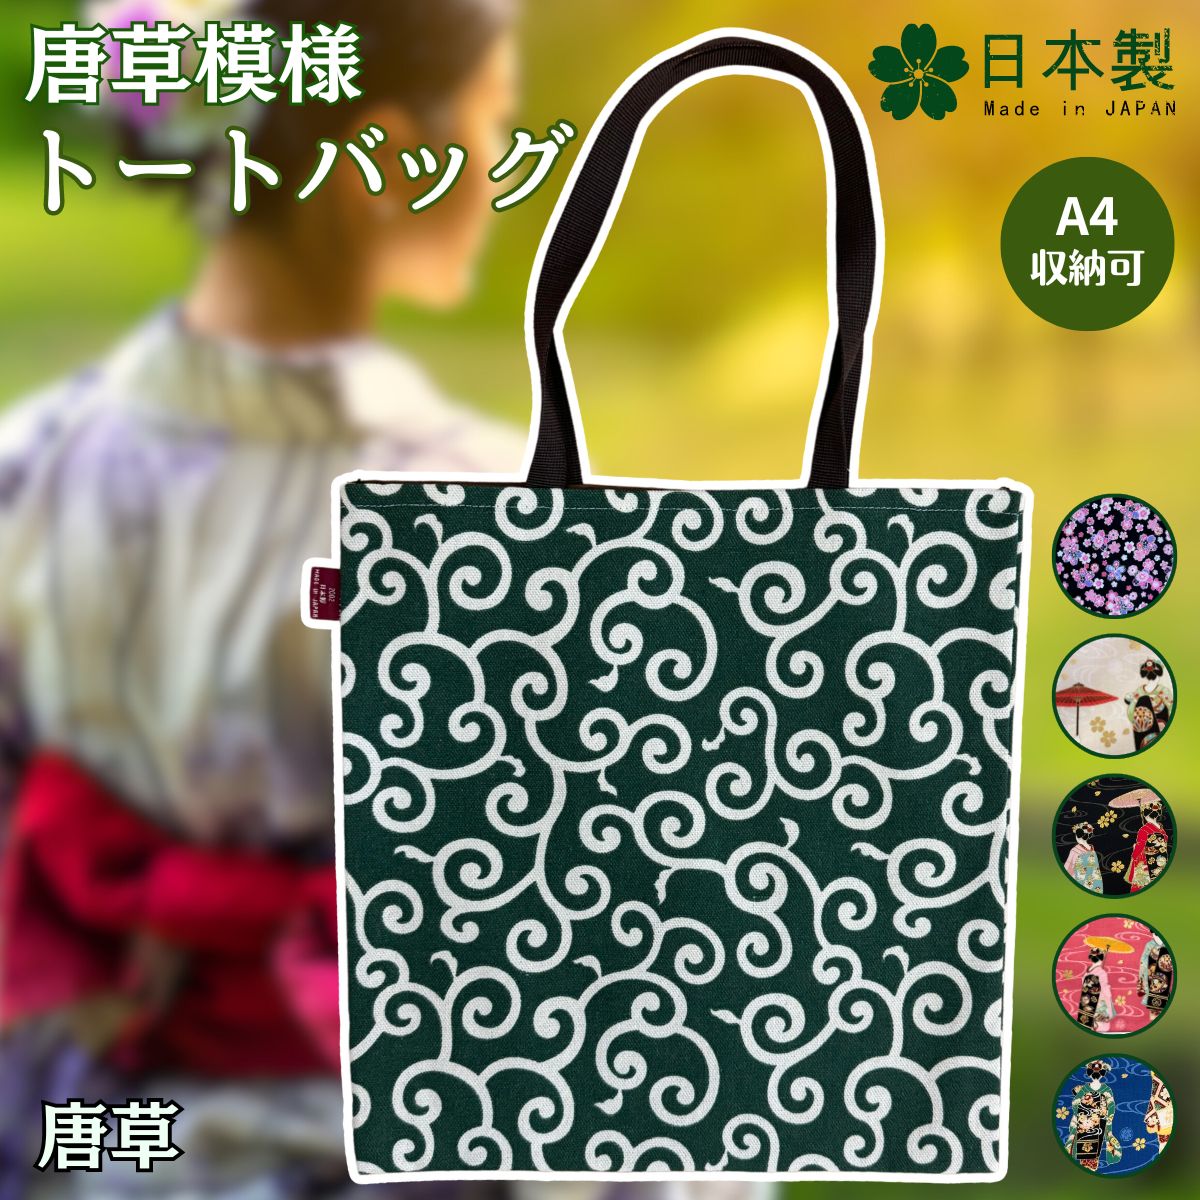 日本製 唐草模様 バッグ トートバッグ 綿 生地...の商品画像